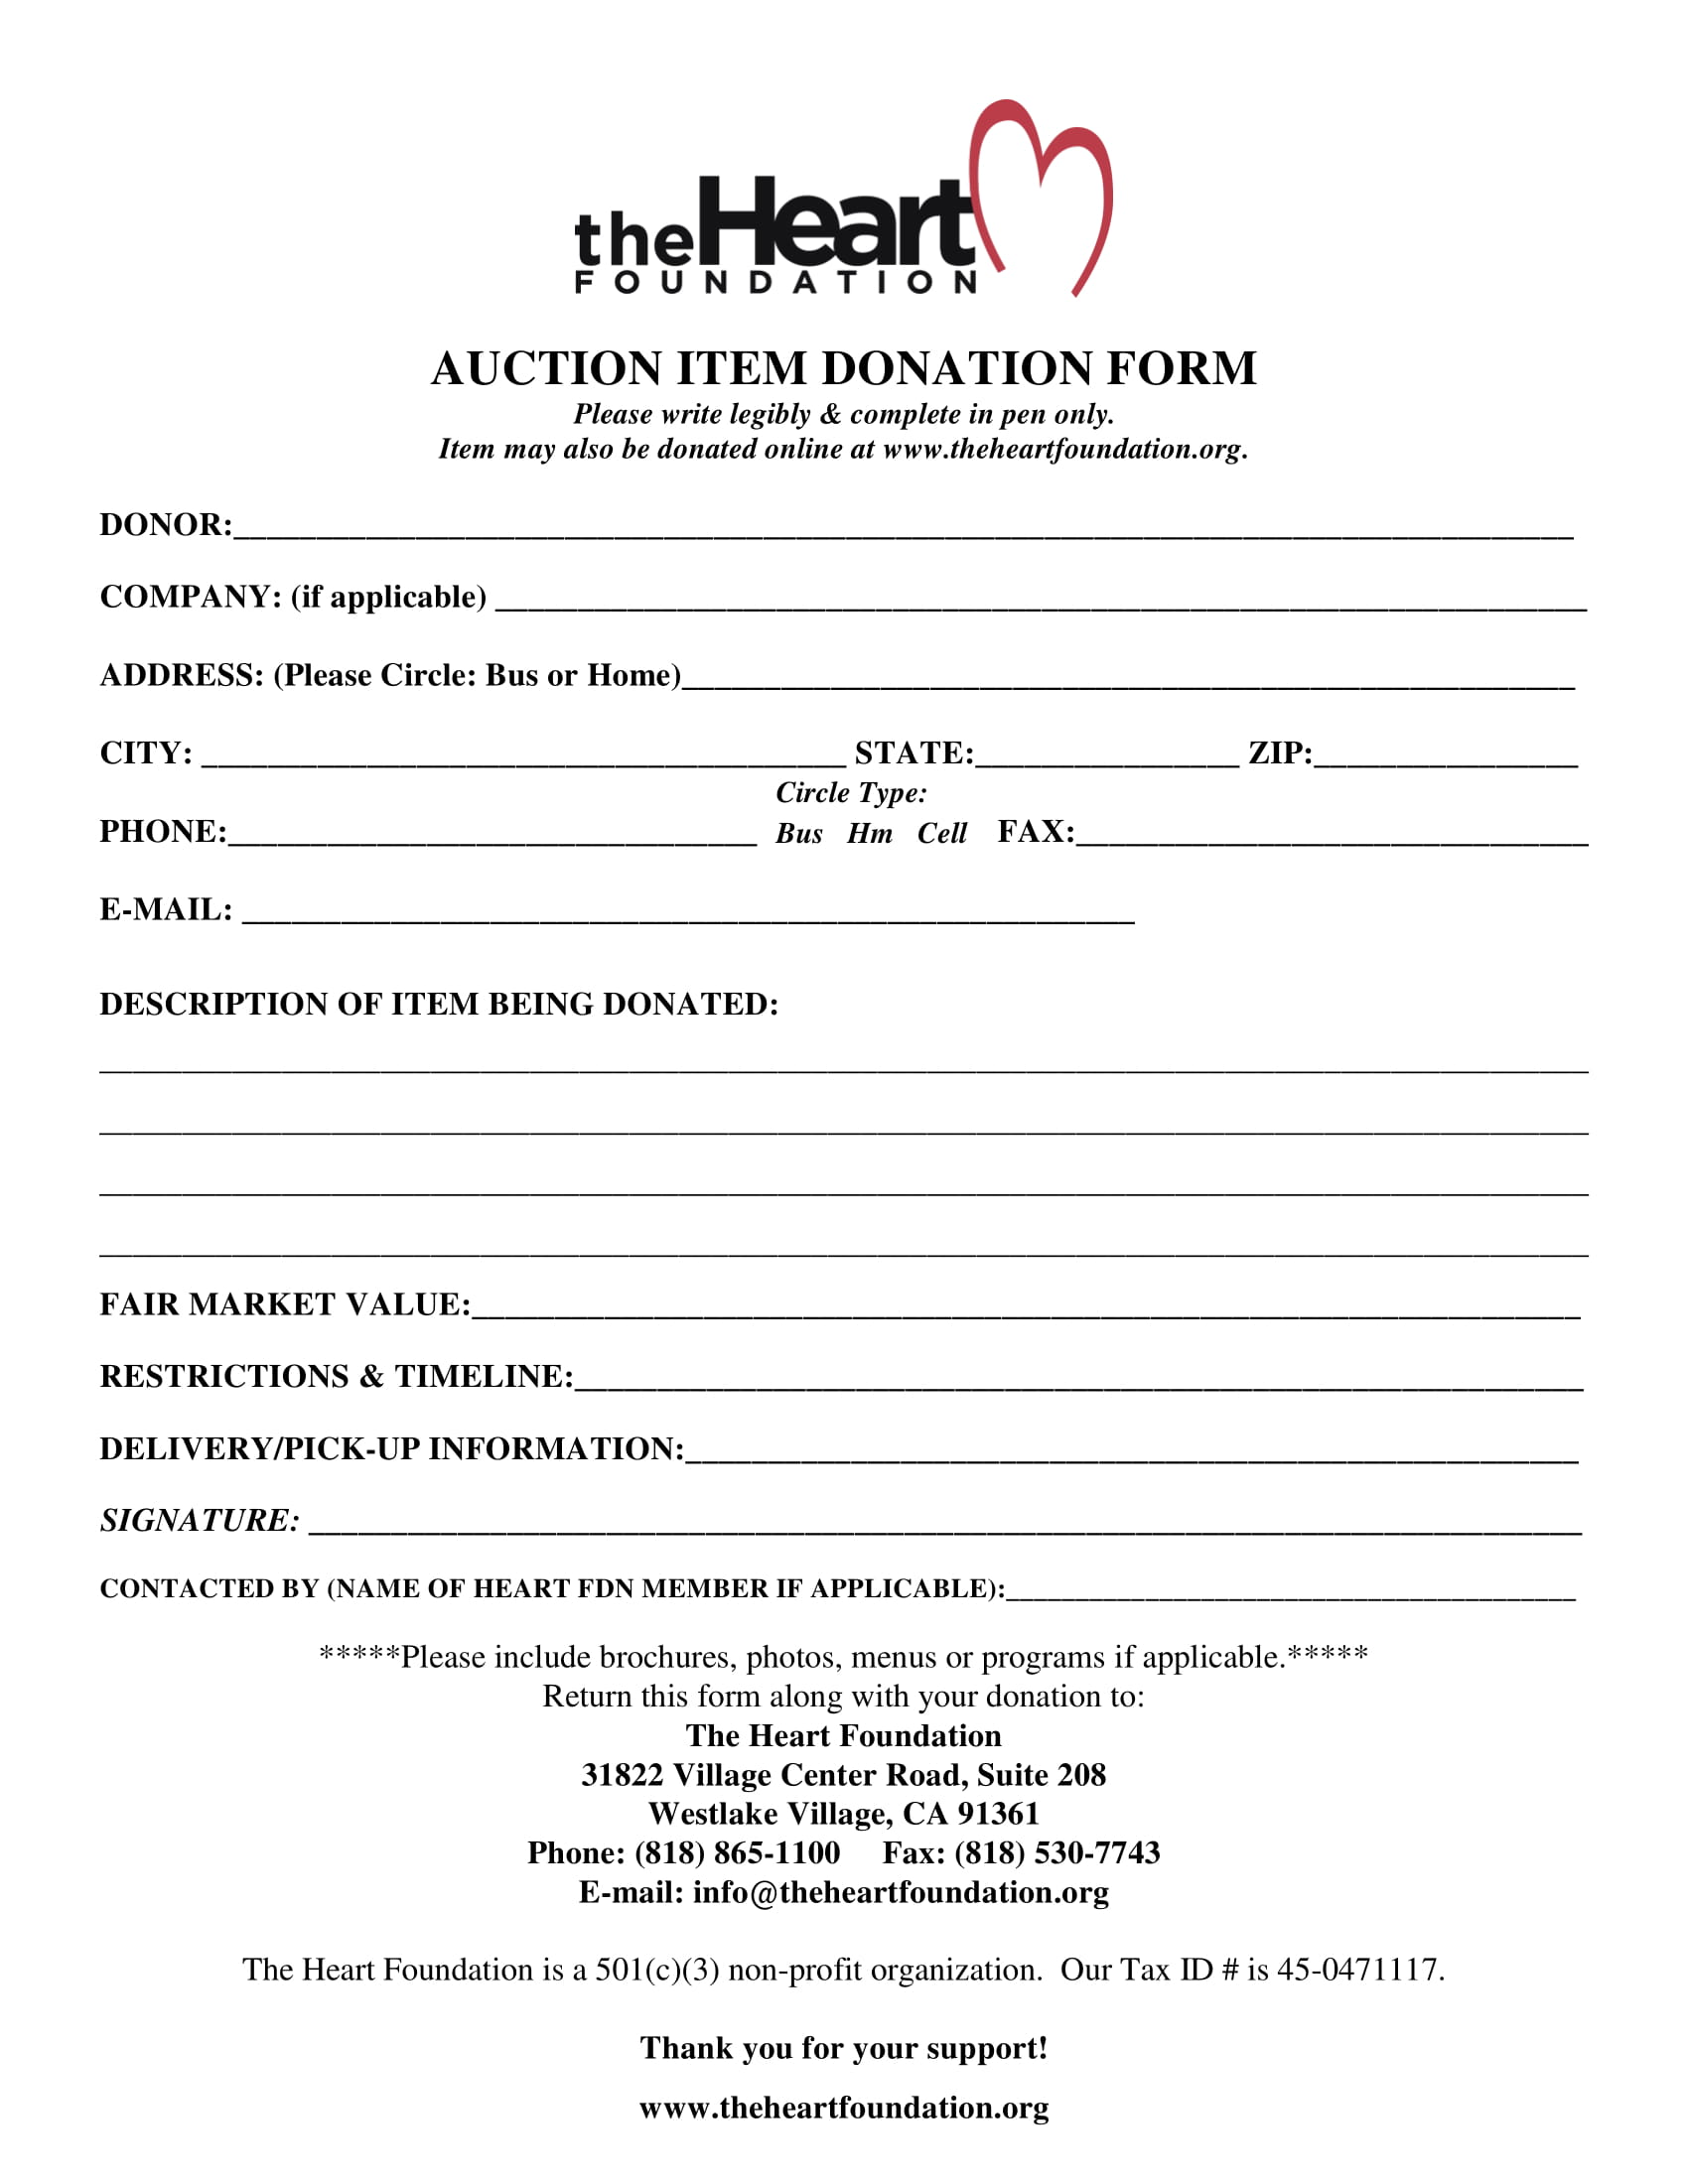 auction item donation form 1